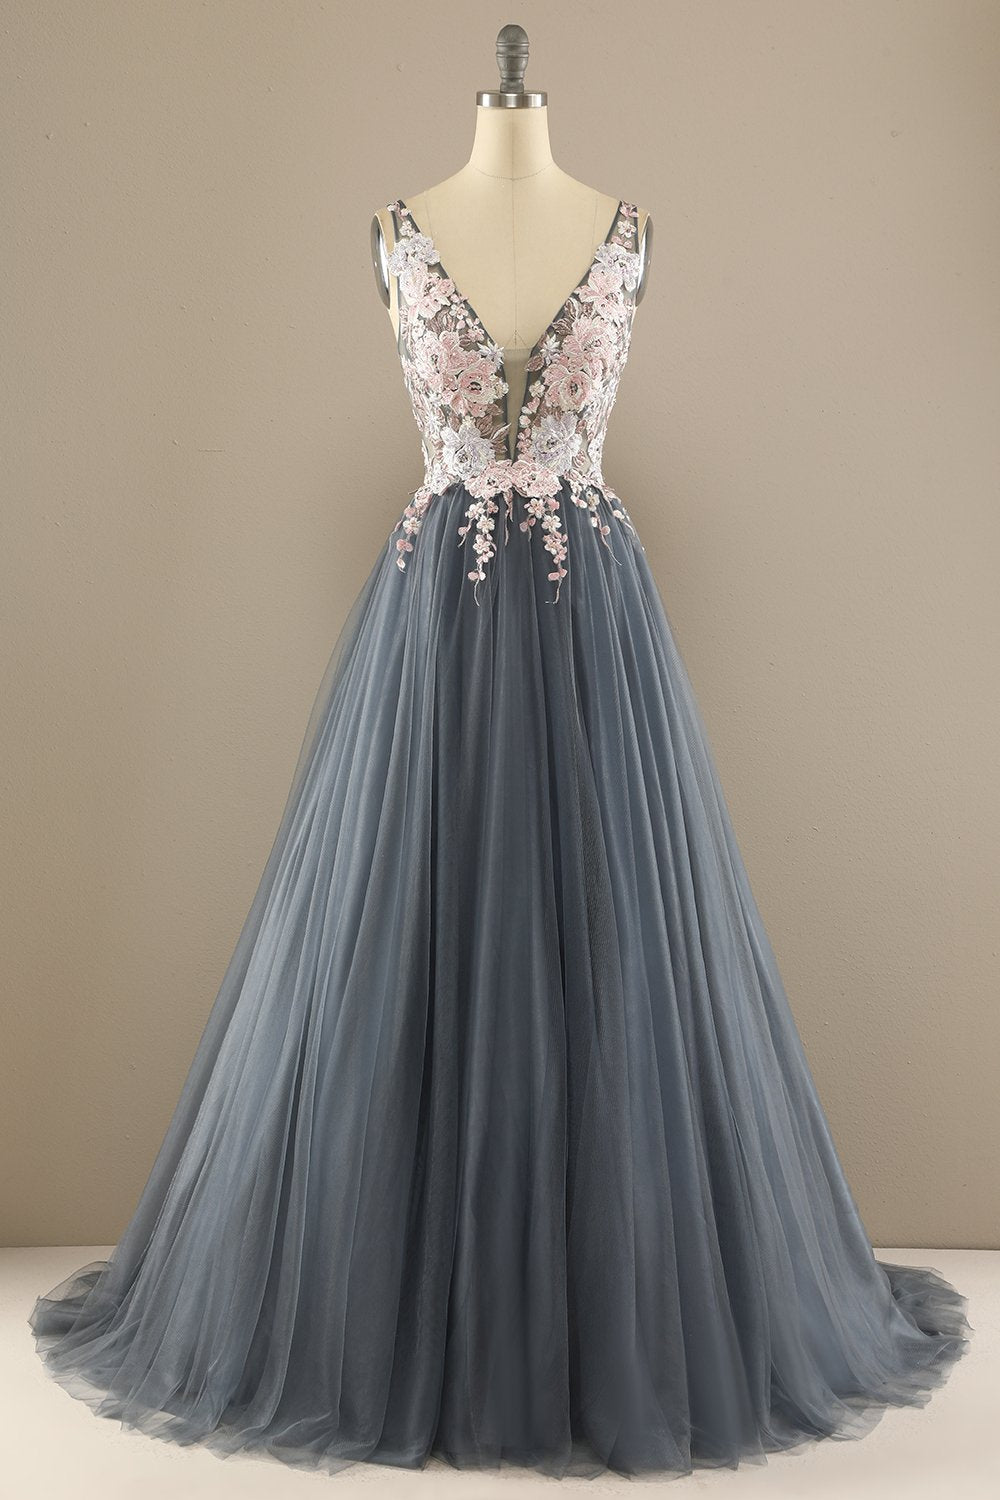 Wunderschönes graues/rosa Hochzeitskleid mit tiefem V-Ausschnitt und Applikationen